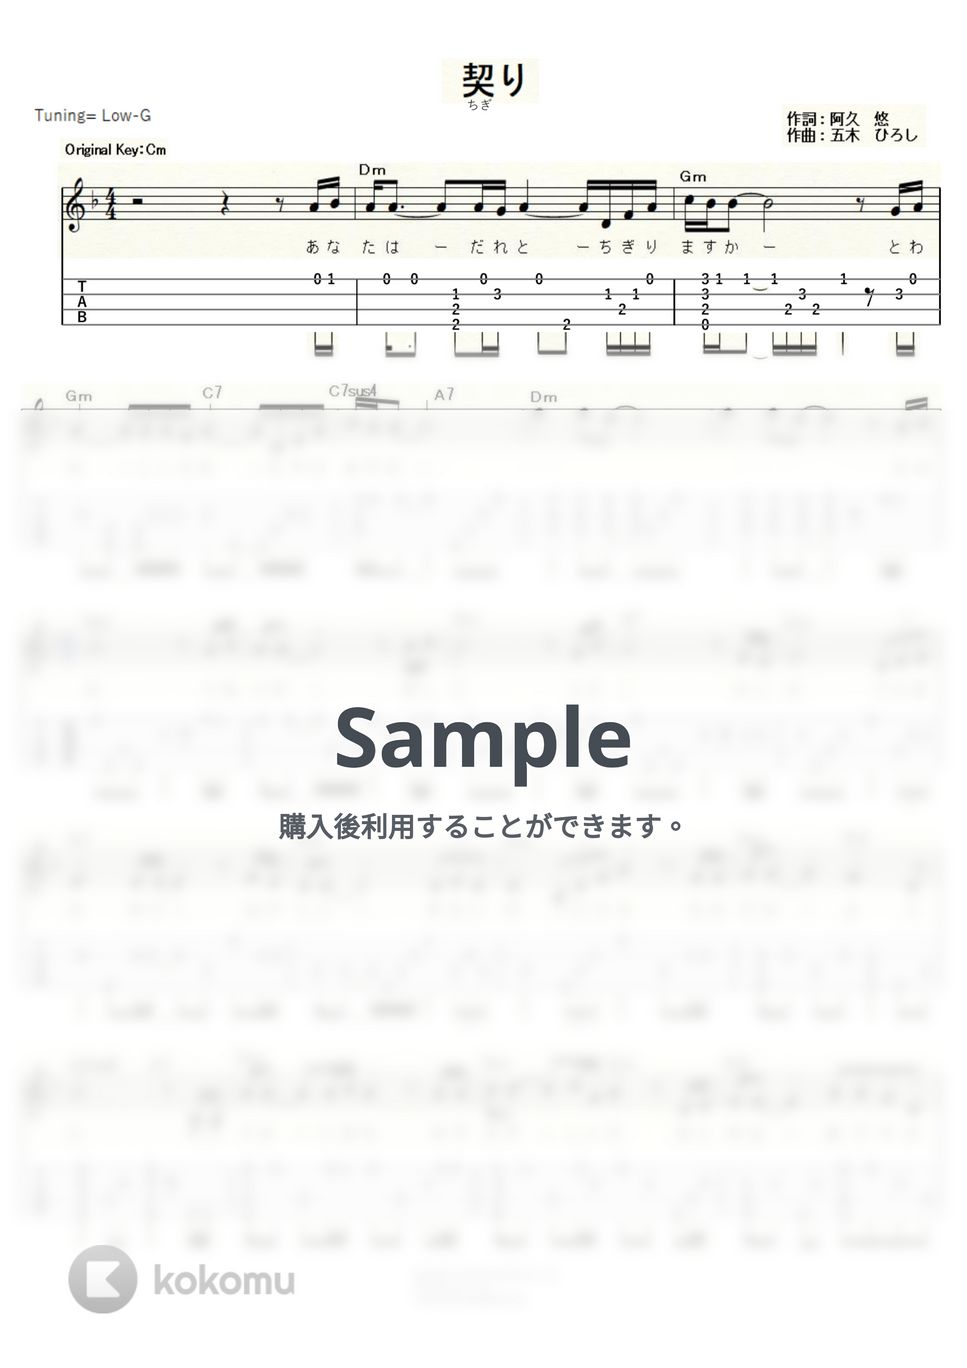 五木 ひろし - 契り (ｳｸﾚﾚｿﾛ/Low-G/中級) by ukulelepapa